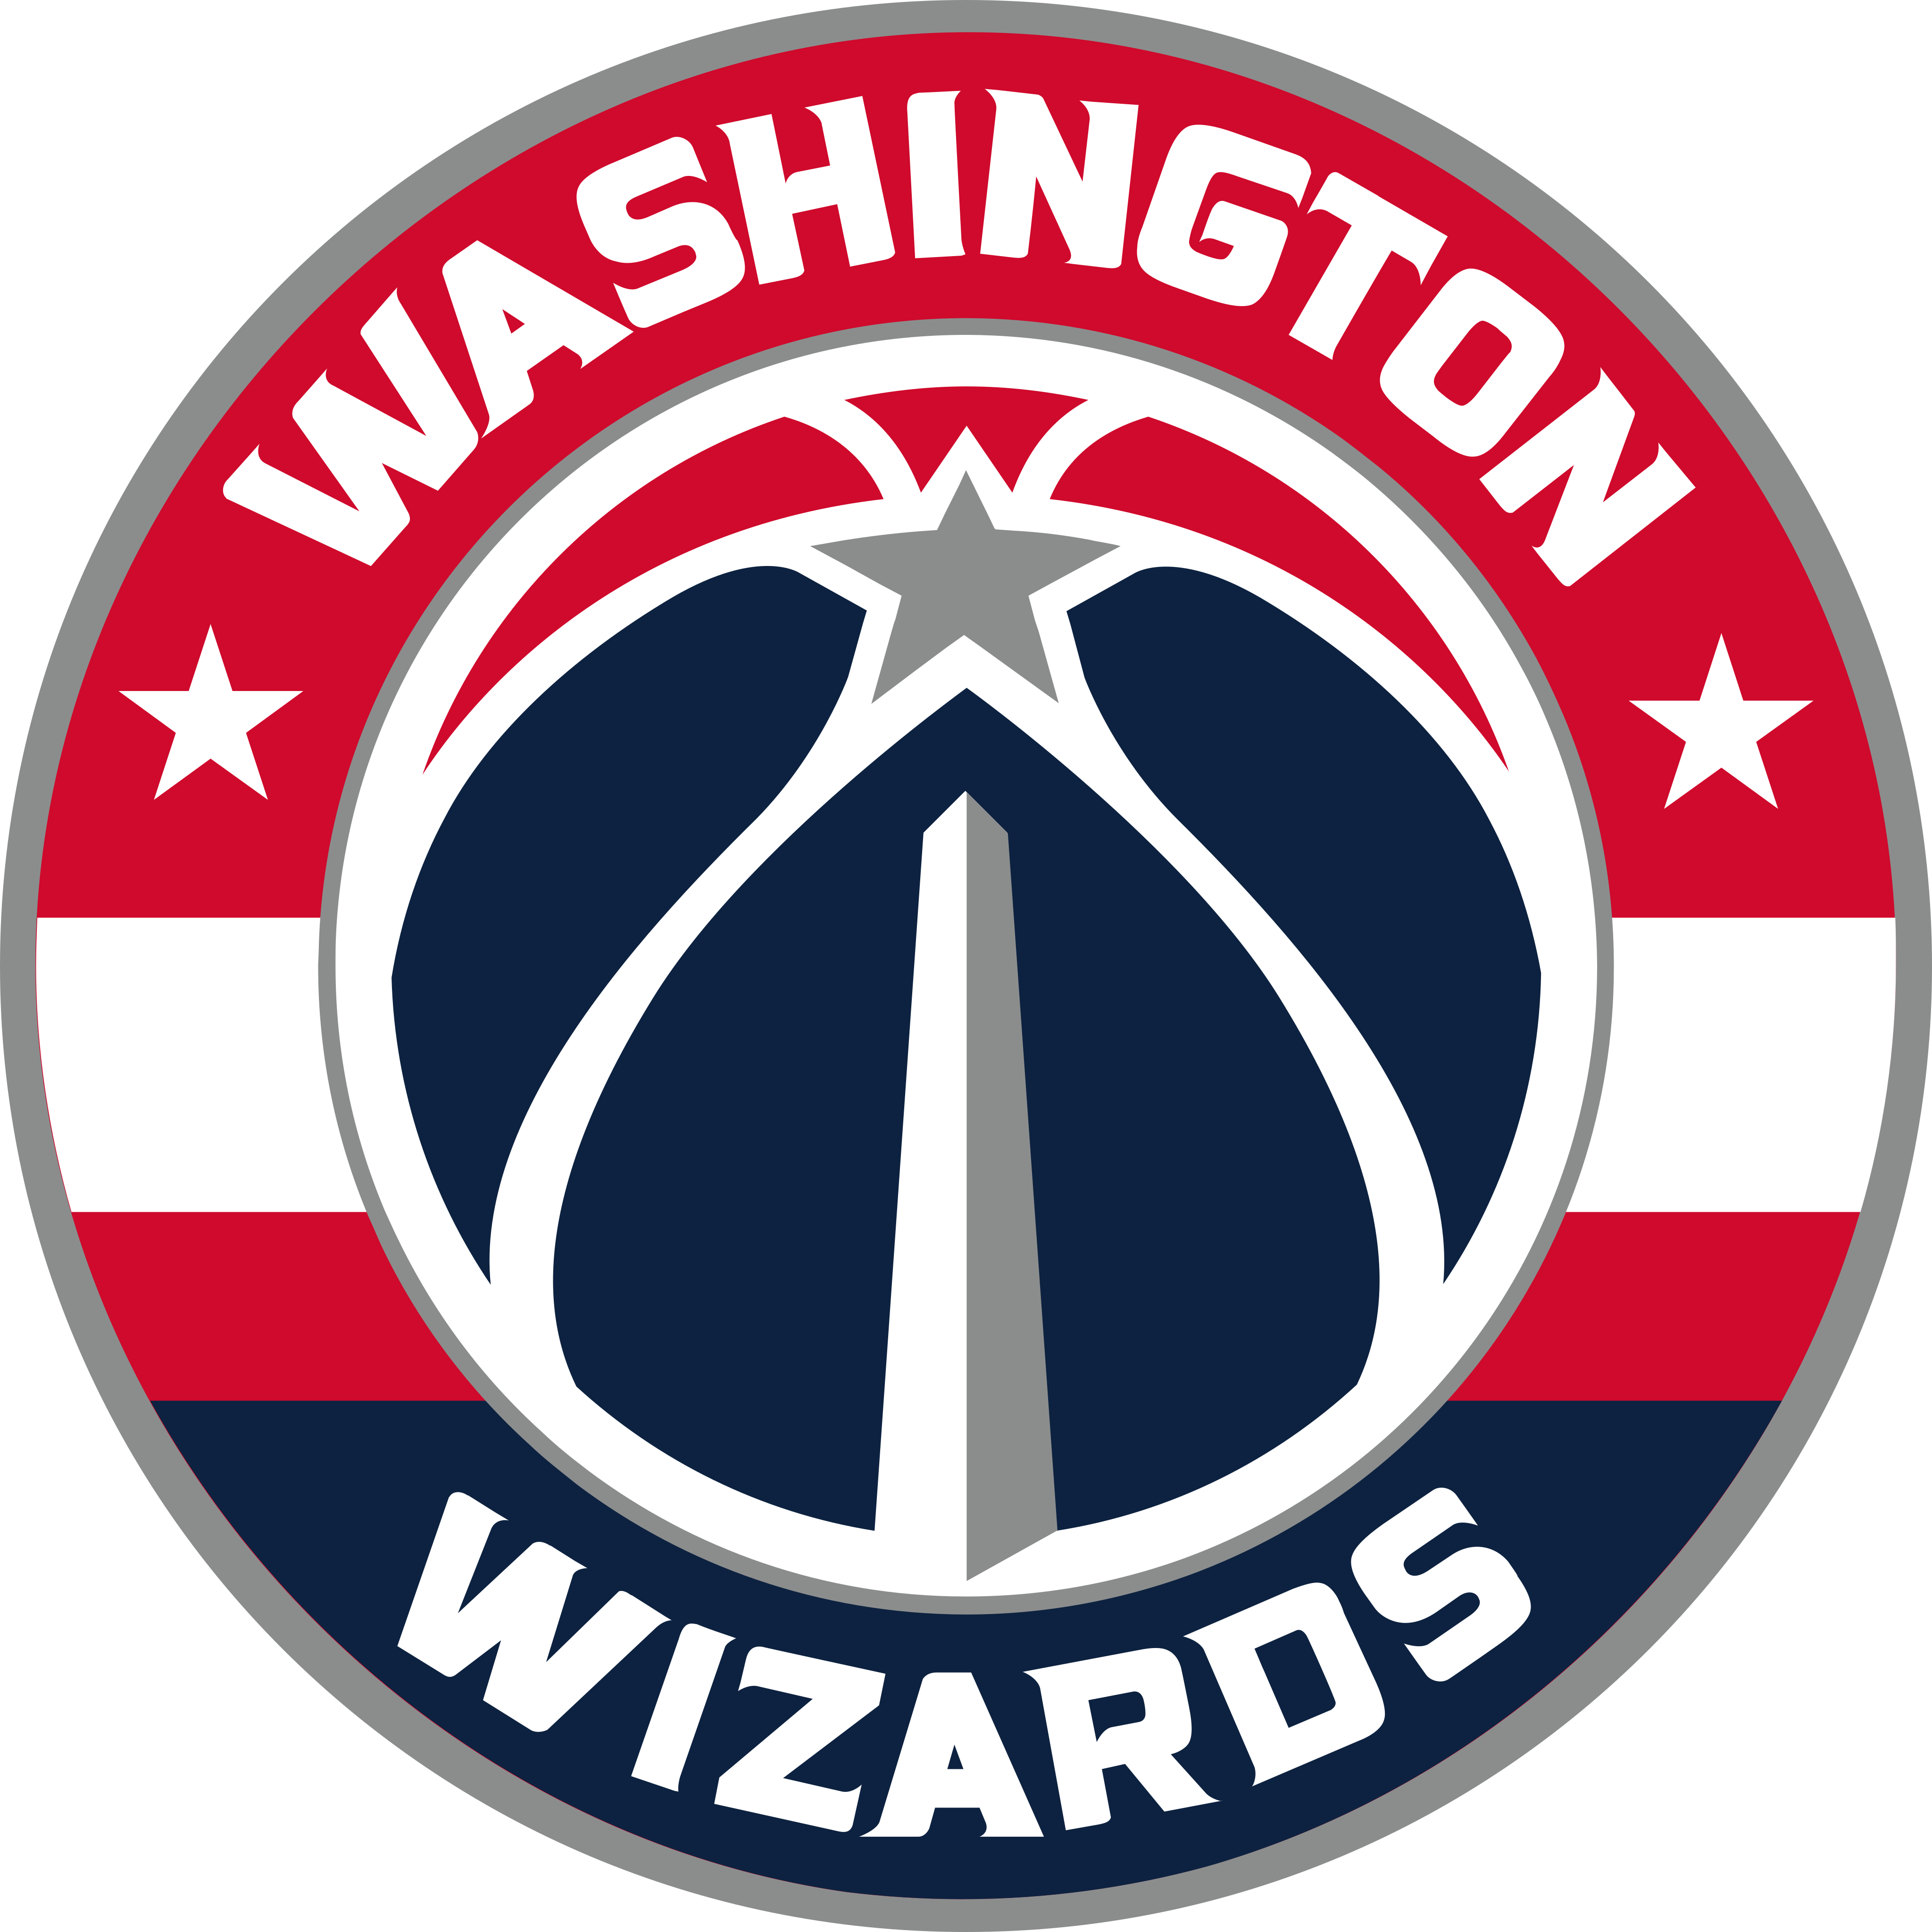 washington wizards logo - Washington Wizards Logo